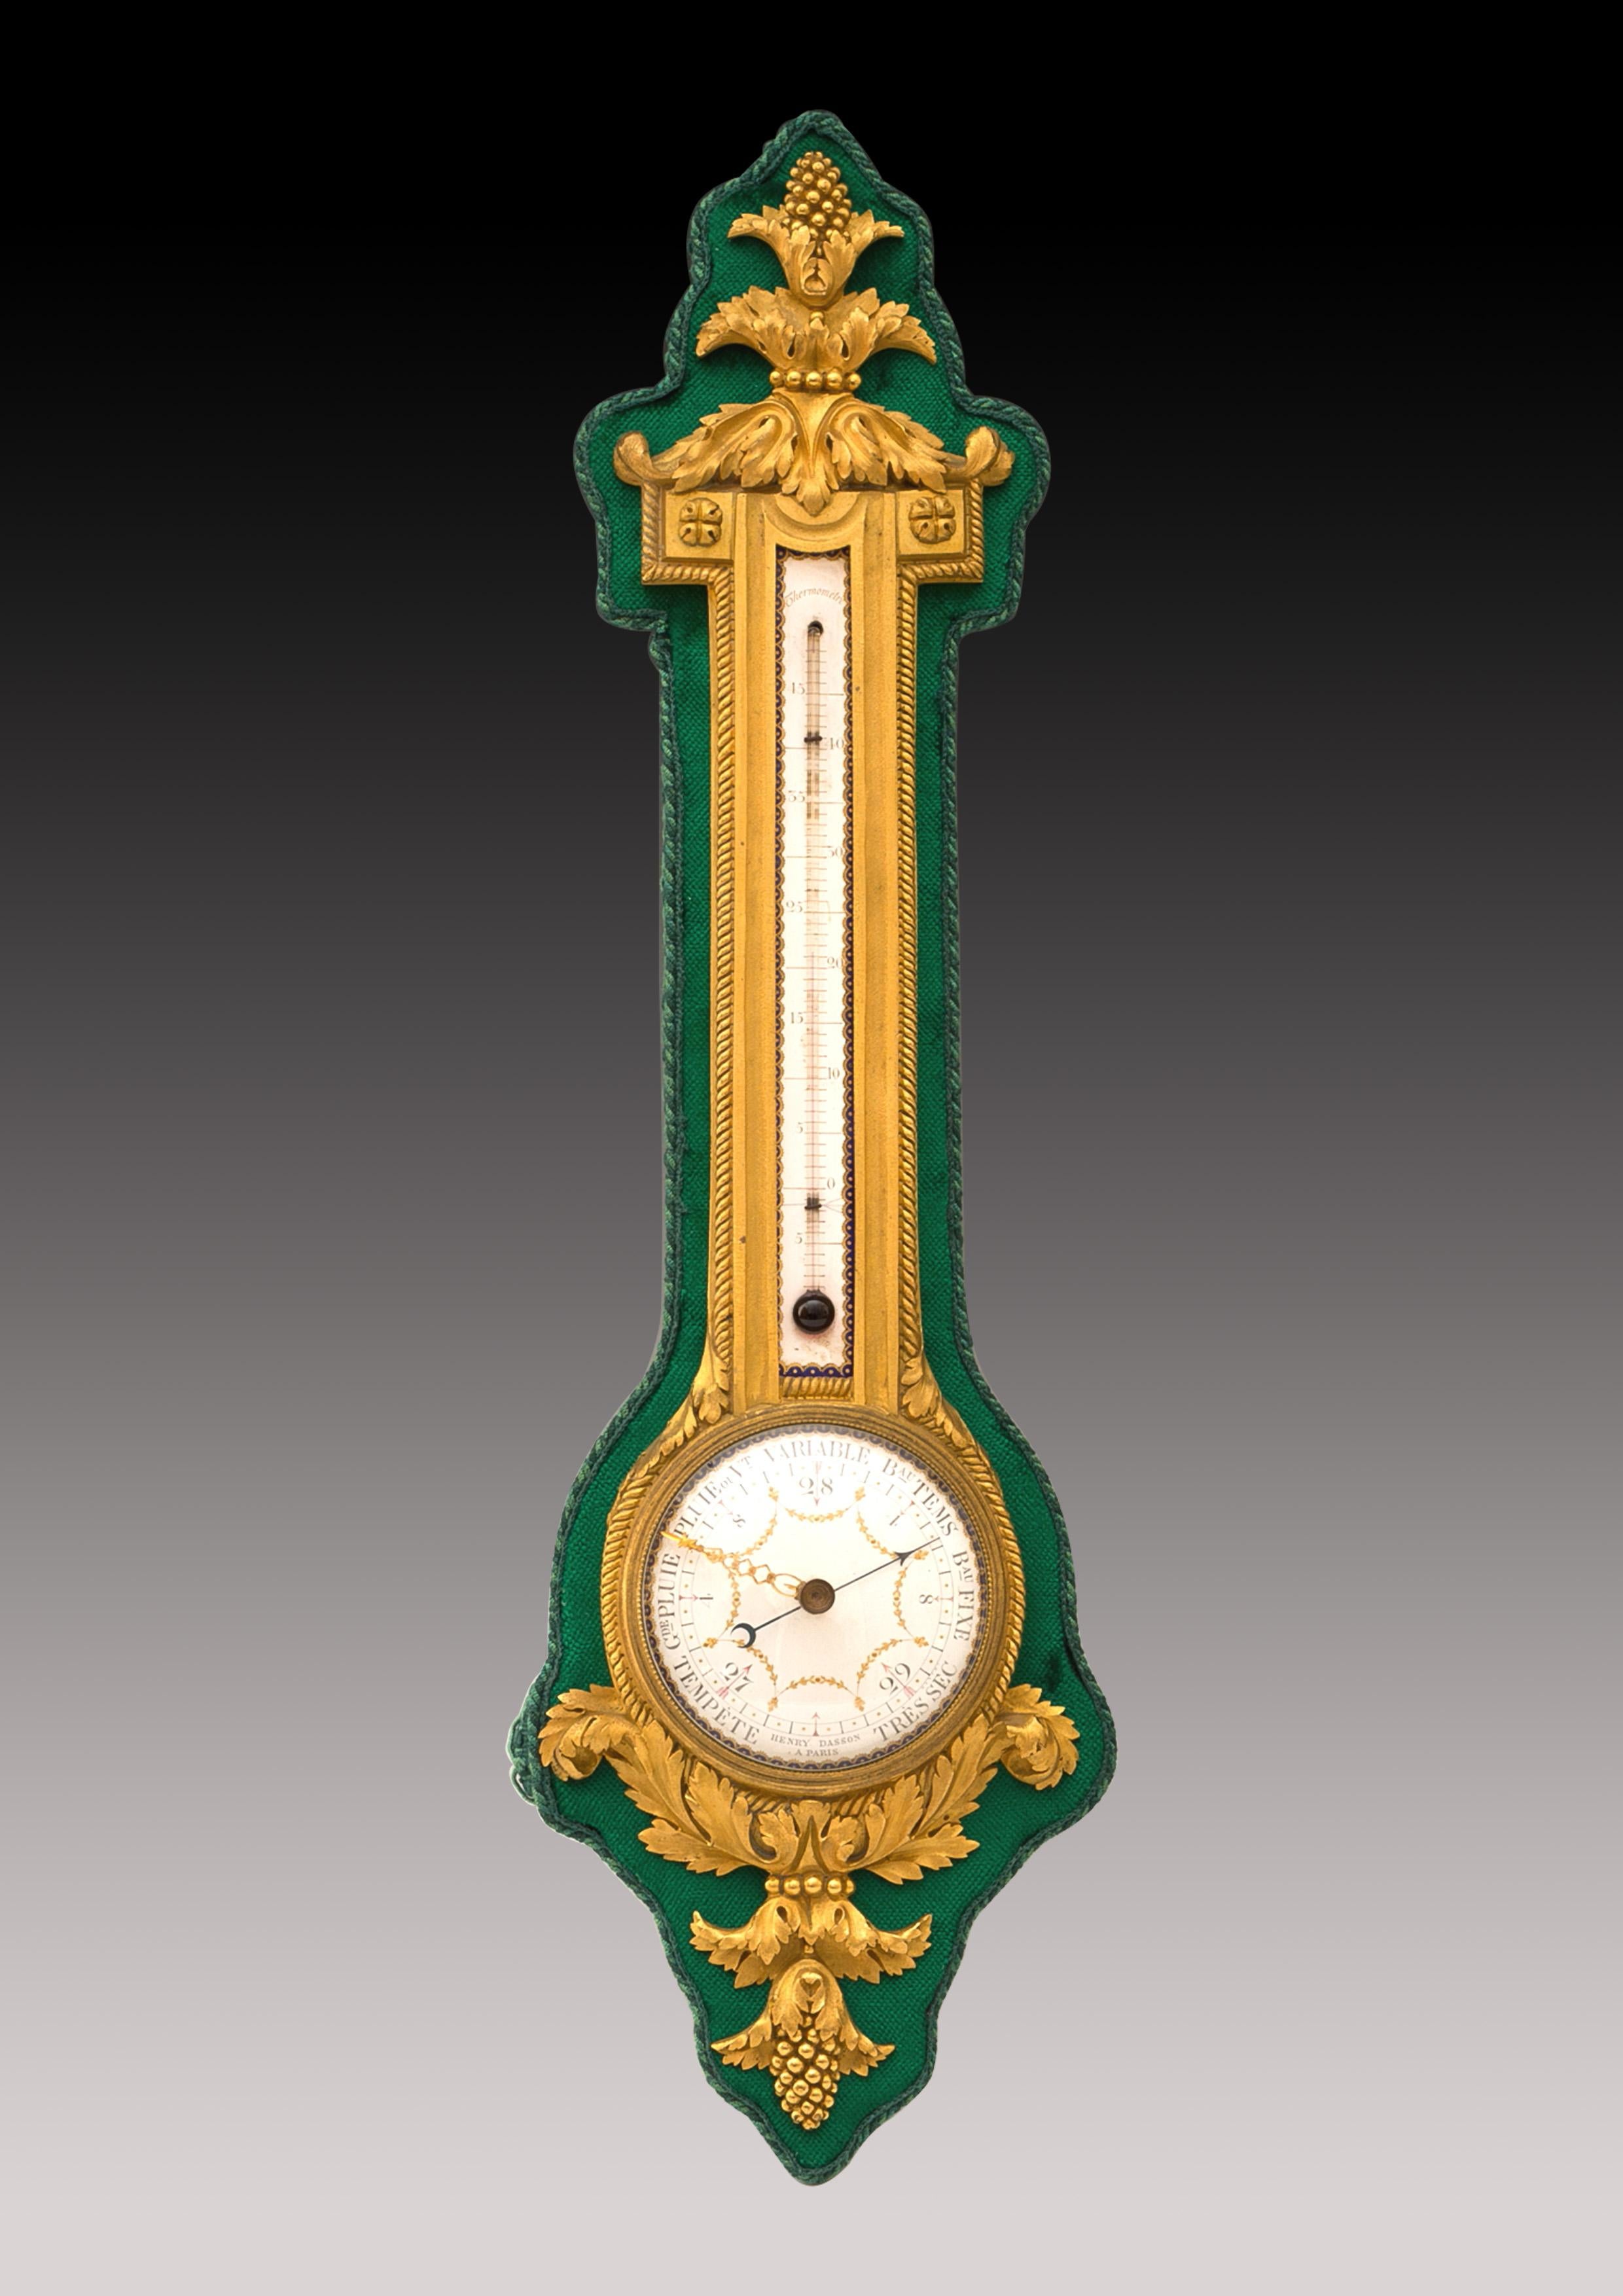 Ein Paar Barometer und Thermometer im Louis XVI-Stil, fein dekoriert mit vergoldeten Bronze-Akanthusblättern und Samen auf grünem Samt, jeweils mit einer polychrom dekorierten Emailleplatte, signiert Henry Dasson / à Paris.

Als Kunsttischler und